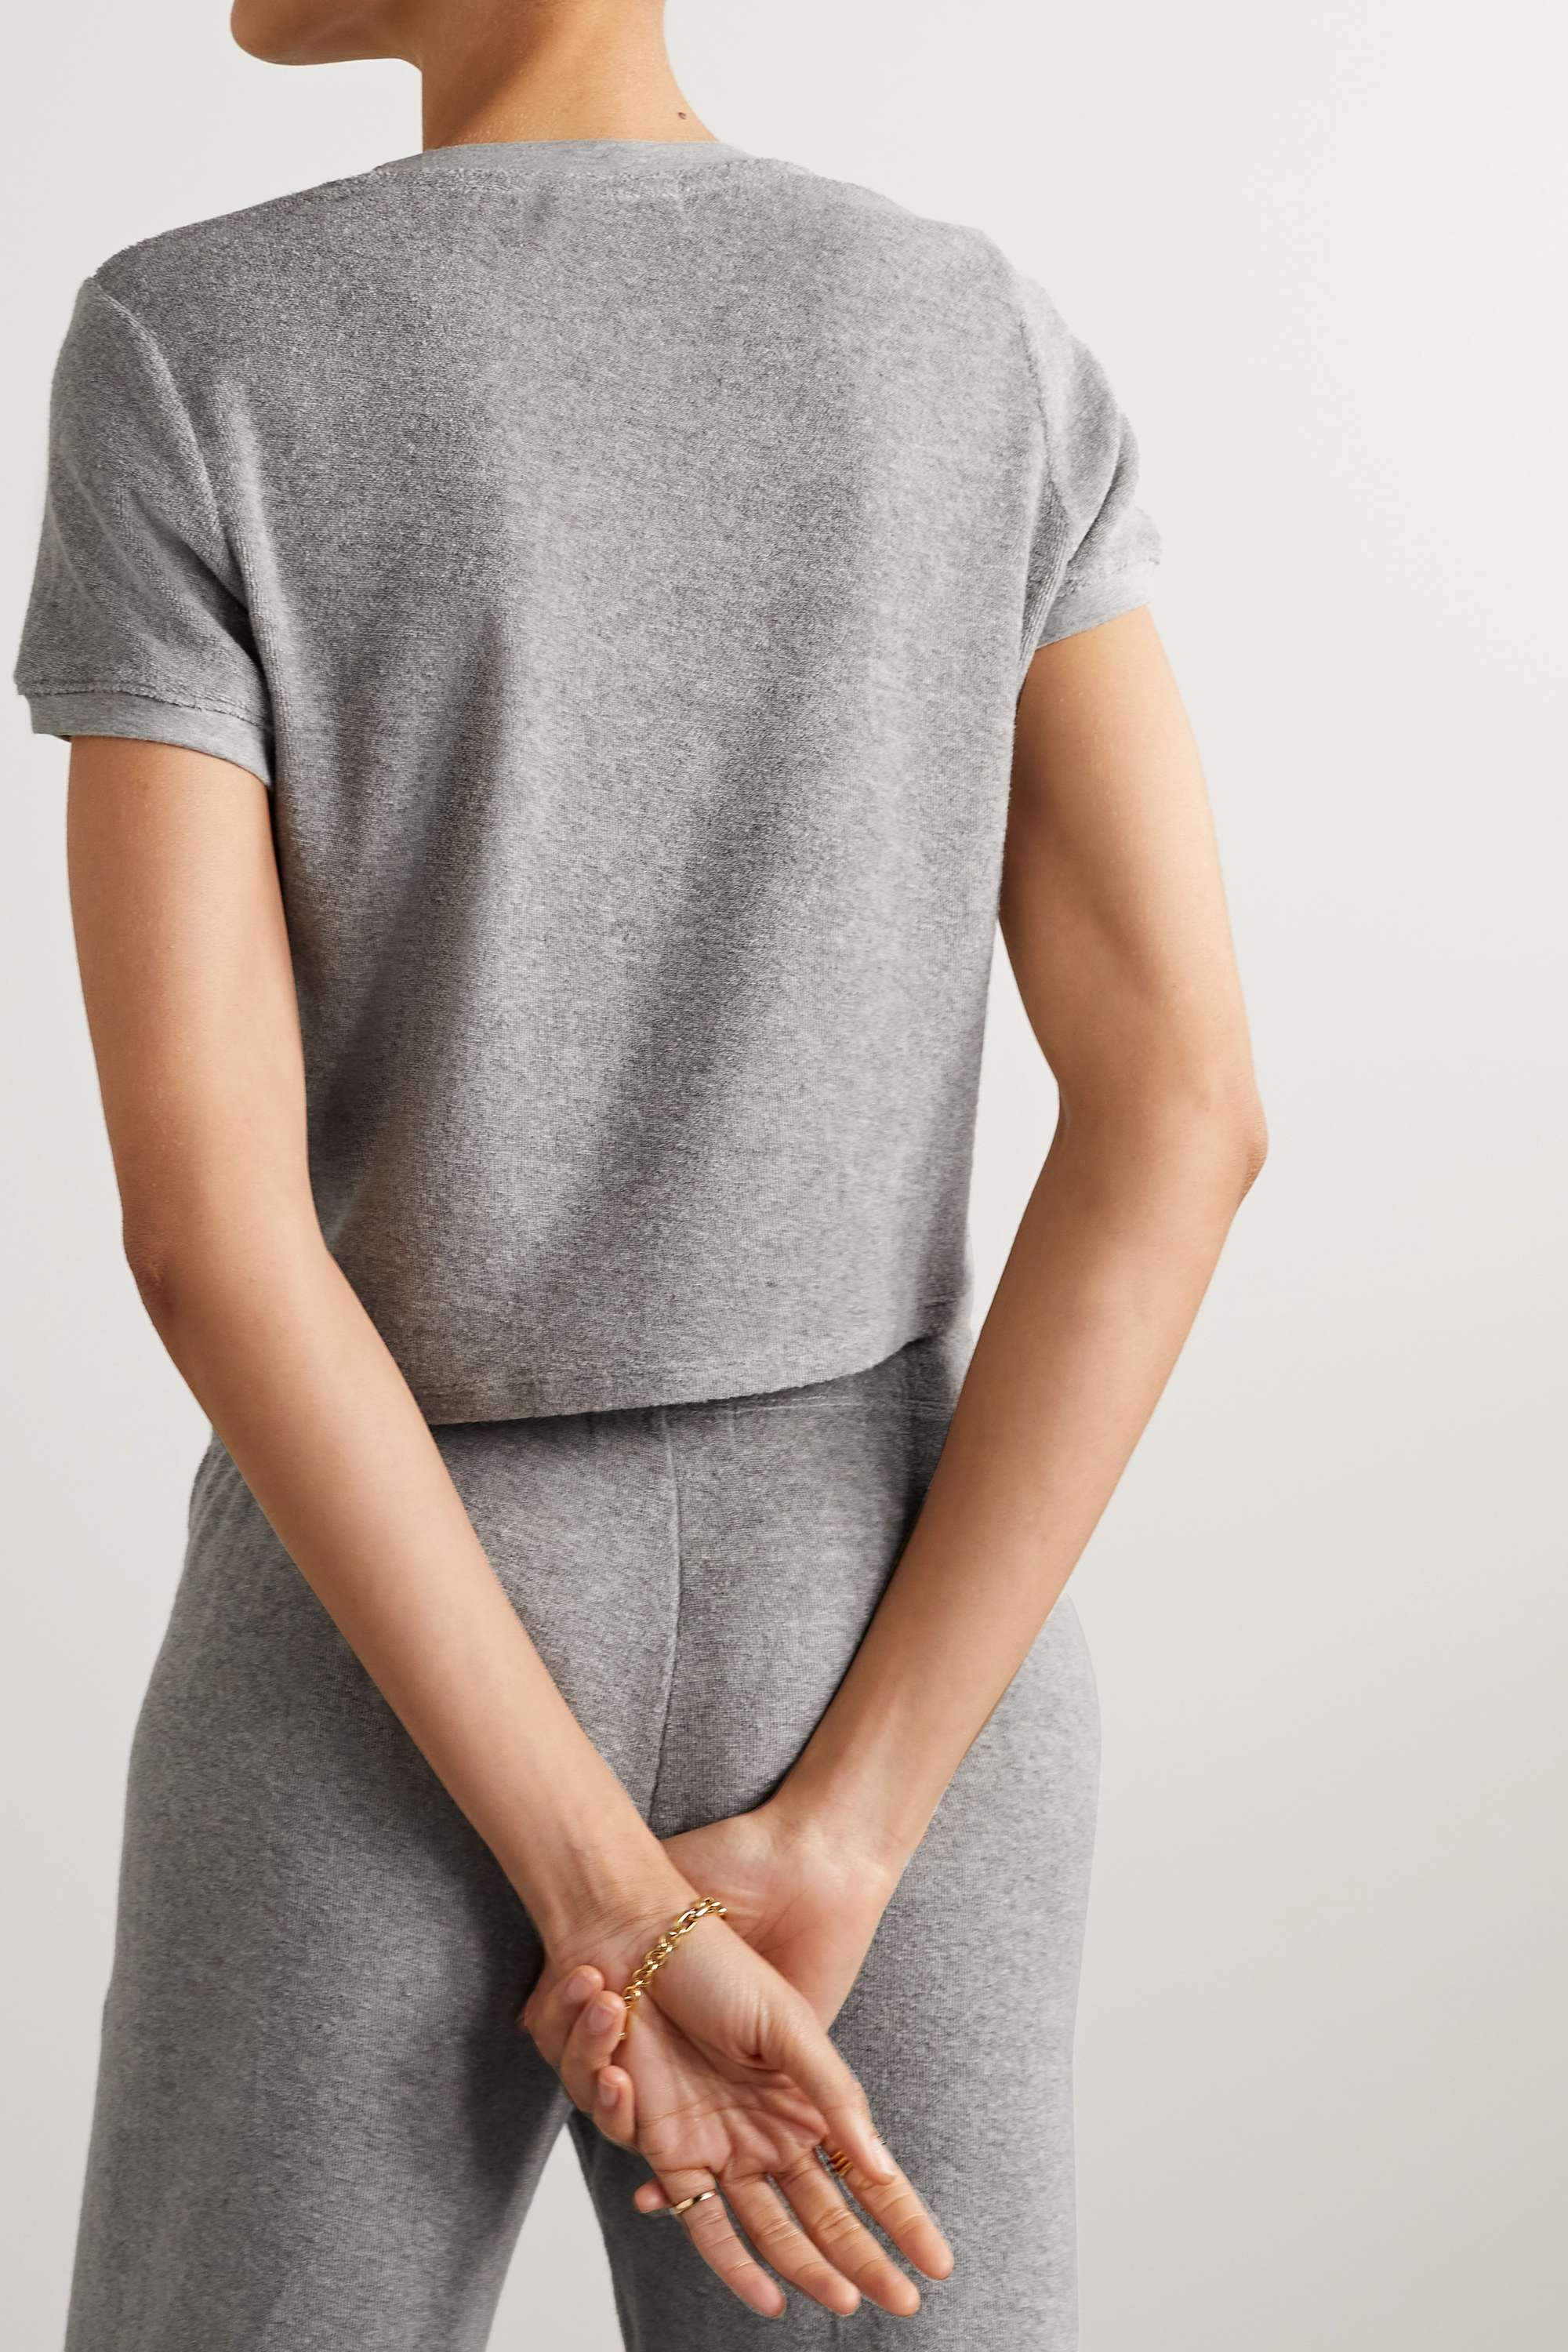 SUZIE KONDI Капри футболка из хлопковой махровой ткани, серый